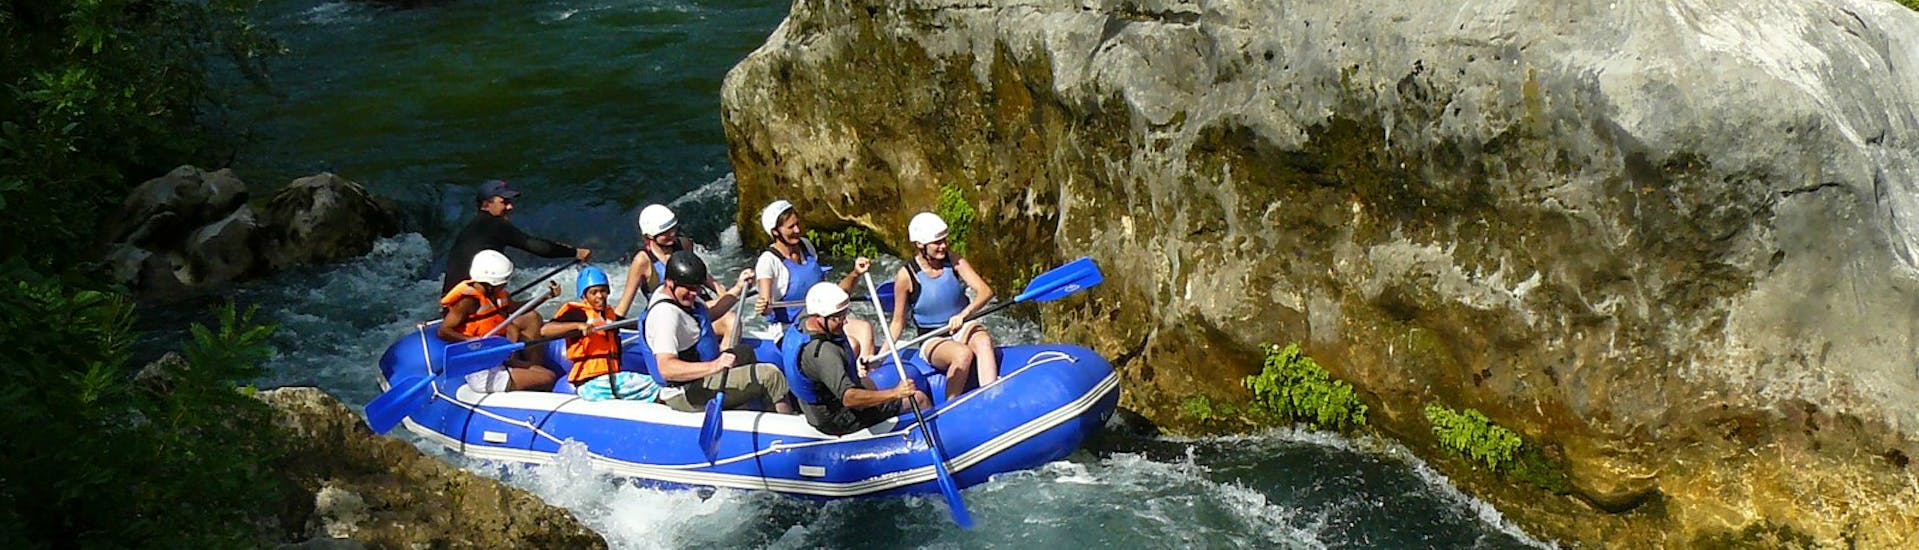 Un gruppo di amici sta pagaiando con sicurezza sul fiume Cetina durante l'attività Rafting "Classic" - Cetina di Rafting Croatia.